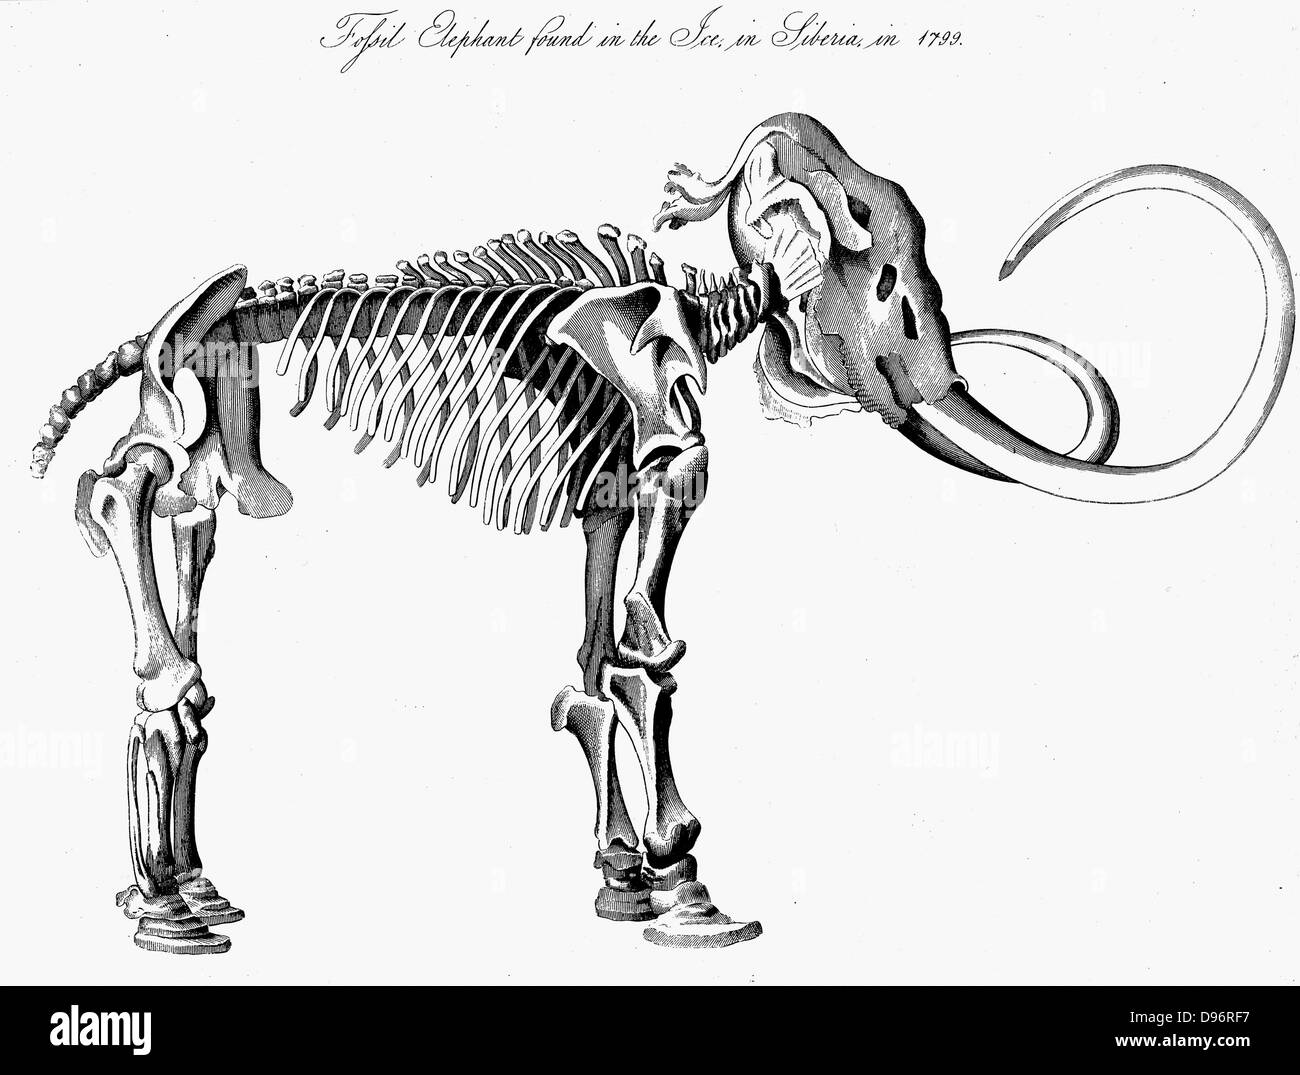 Mammuts (Mammuthis) Skelett, ca. 3 m (9 ft) hoch 5,5m (16 ft) langen, im Eis in Sibirien im Jahre 1799 entdeckt. Ausgestorbene Gattung der Elefant aus dem Pleistozän (2.500.000 bis 10.000 Jahre vor heute) in fossilen Ablagerungen und in Nordeuropa als 30.000 Jahre alten gefroren Schlachtkörper in schmelzenden Gletschern gefunden. Gravur von George Leopold Cuvier "Animal Kingdom" London 1830. Stockfoto